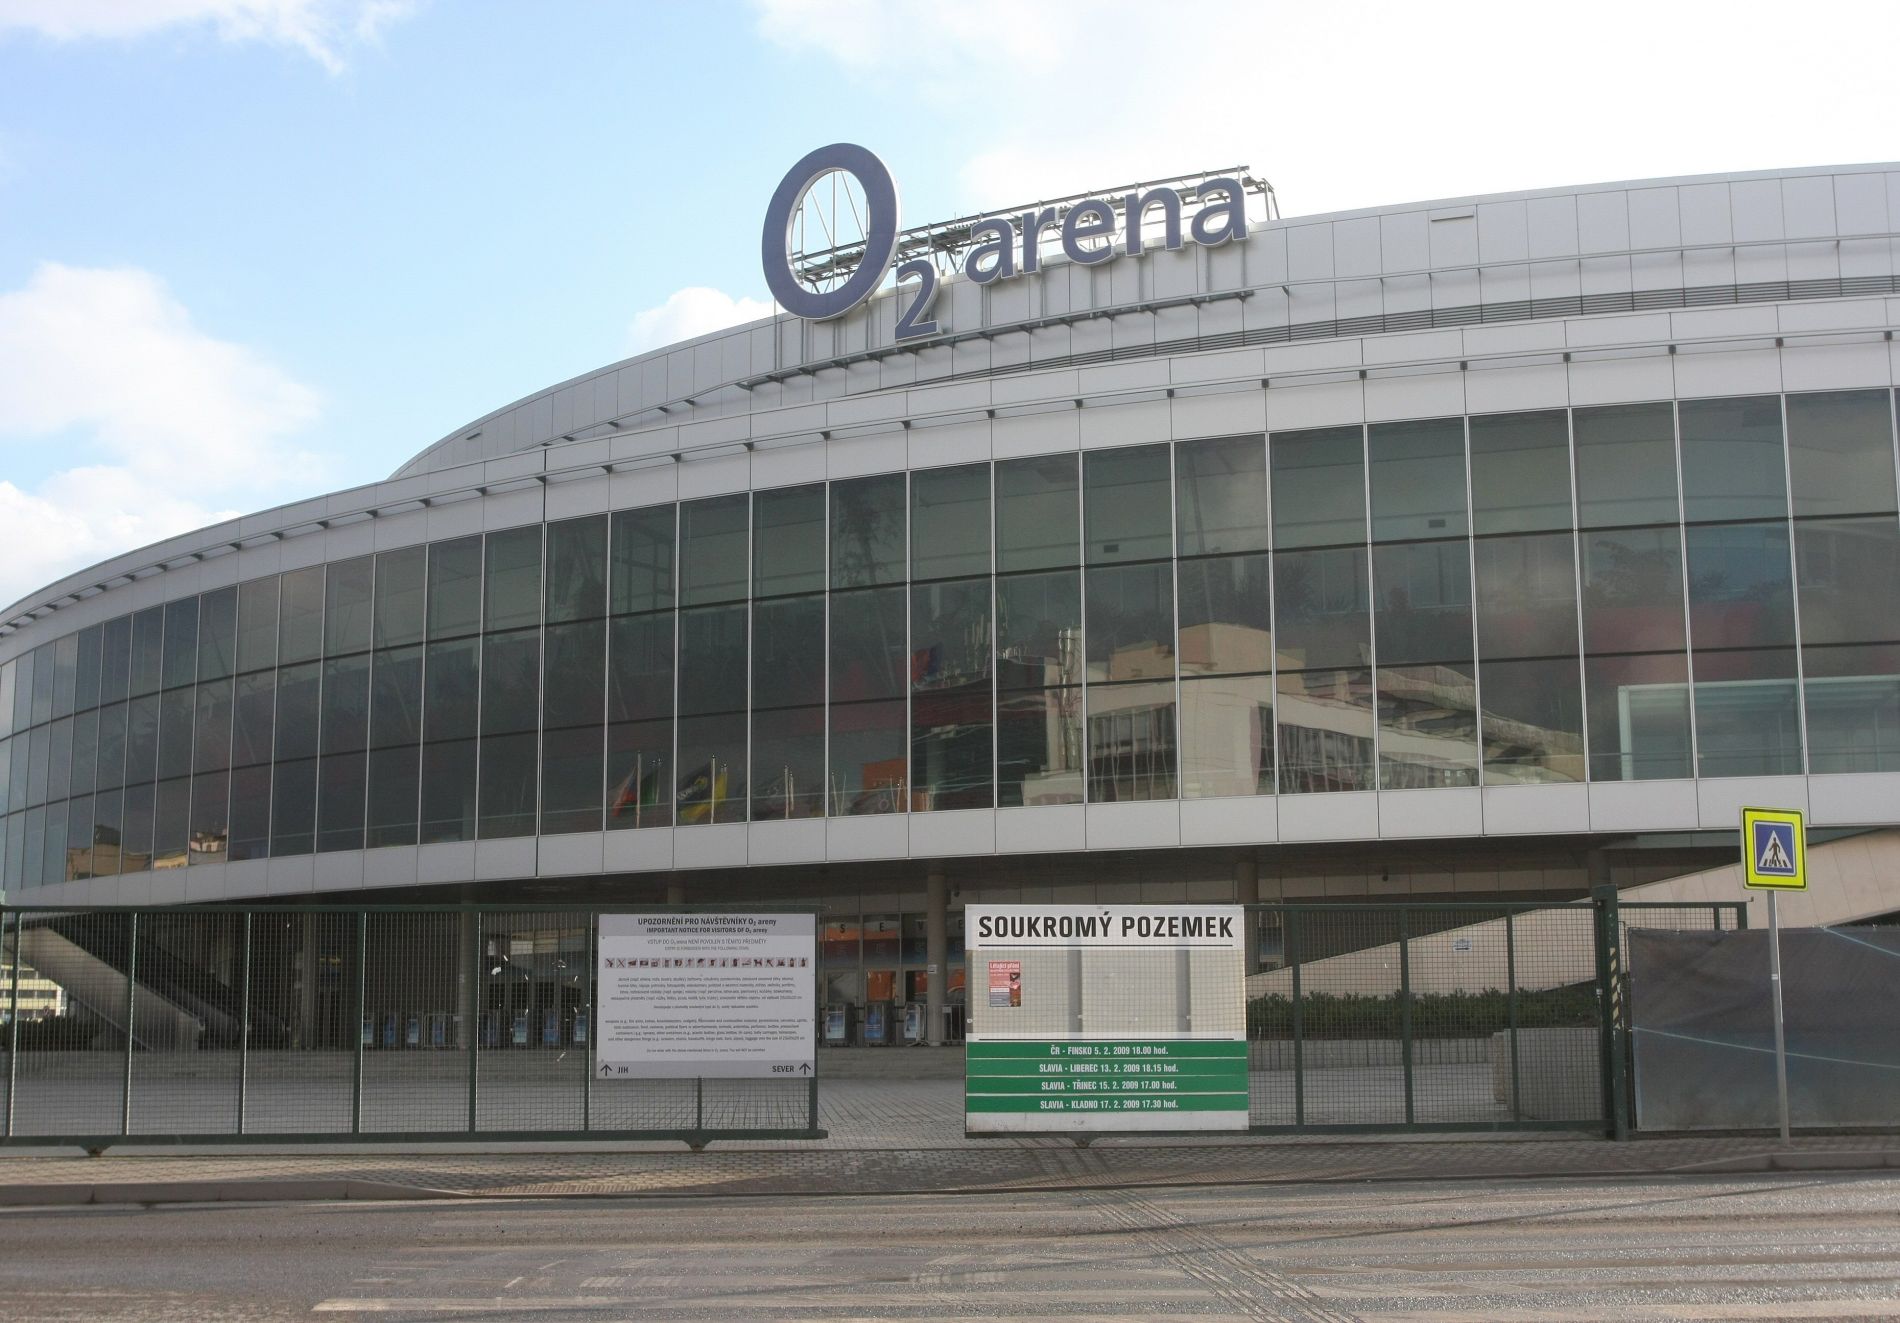 HC Slavia Praha - Wikipedia